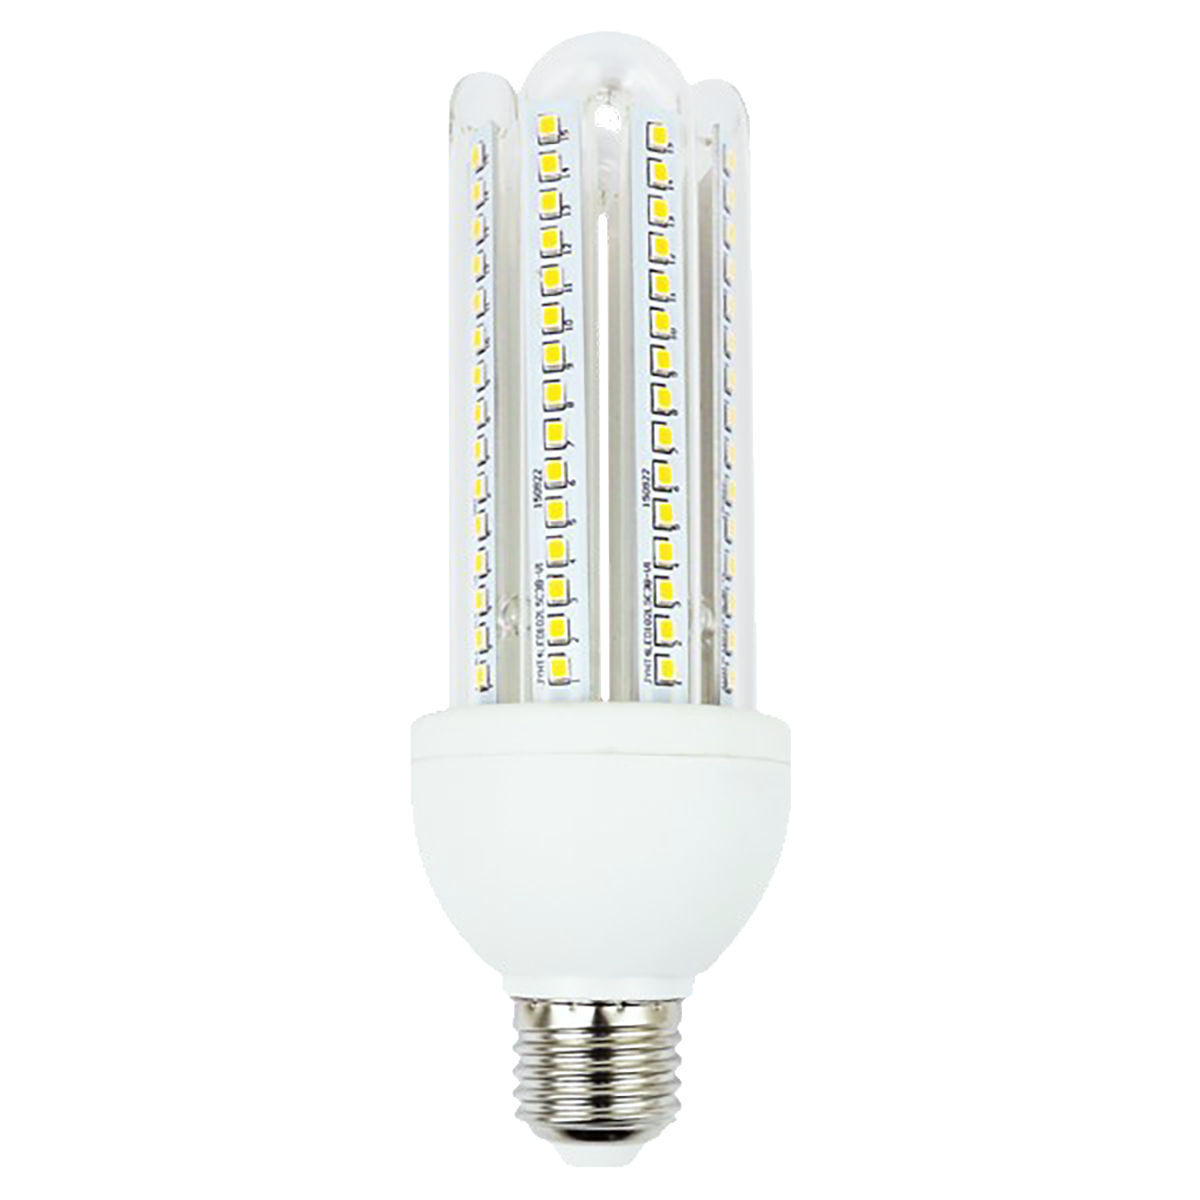 LED Leuchtmittel 4 U Form E27, warmweiß